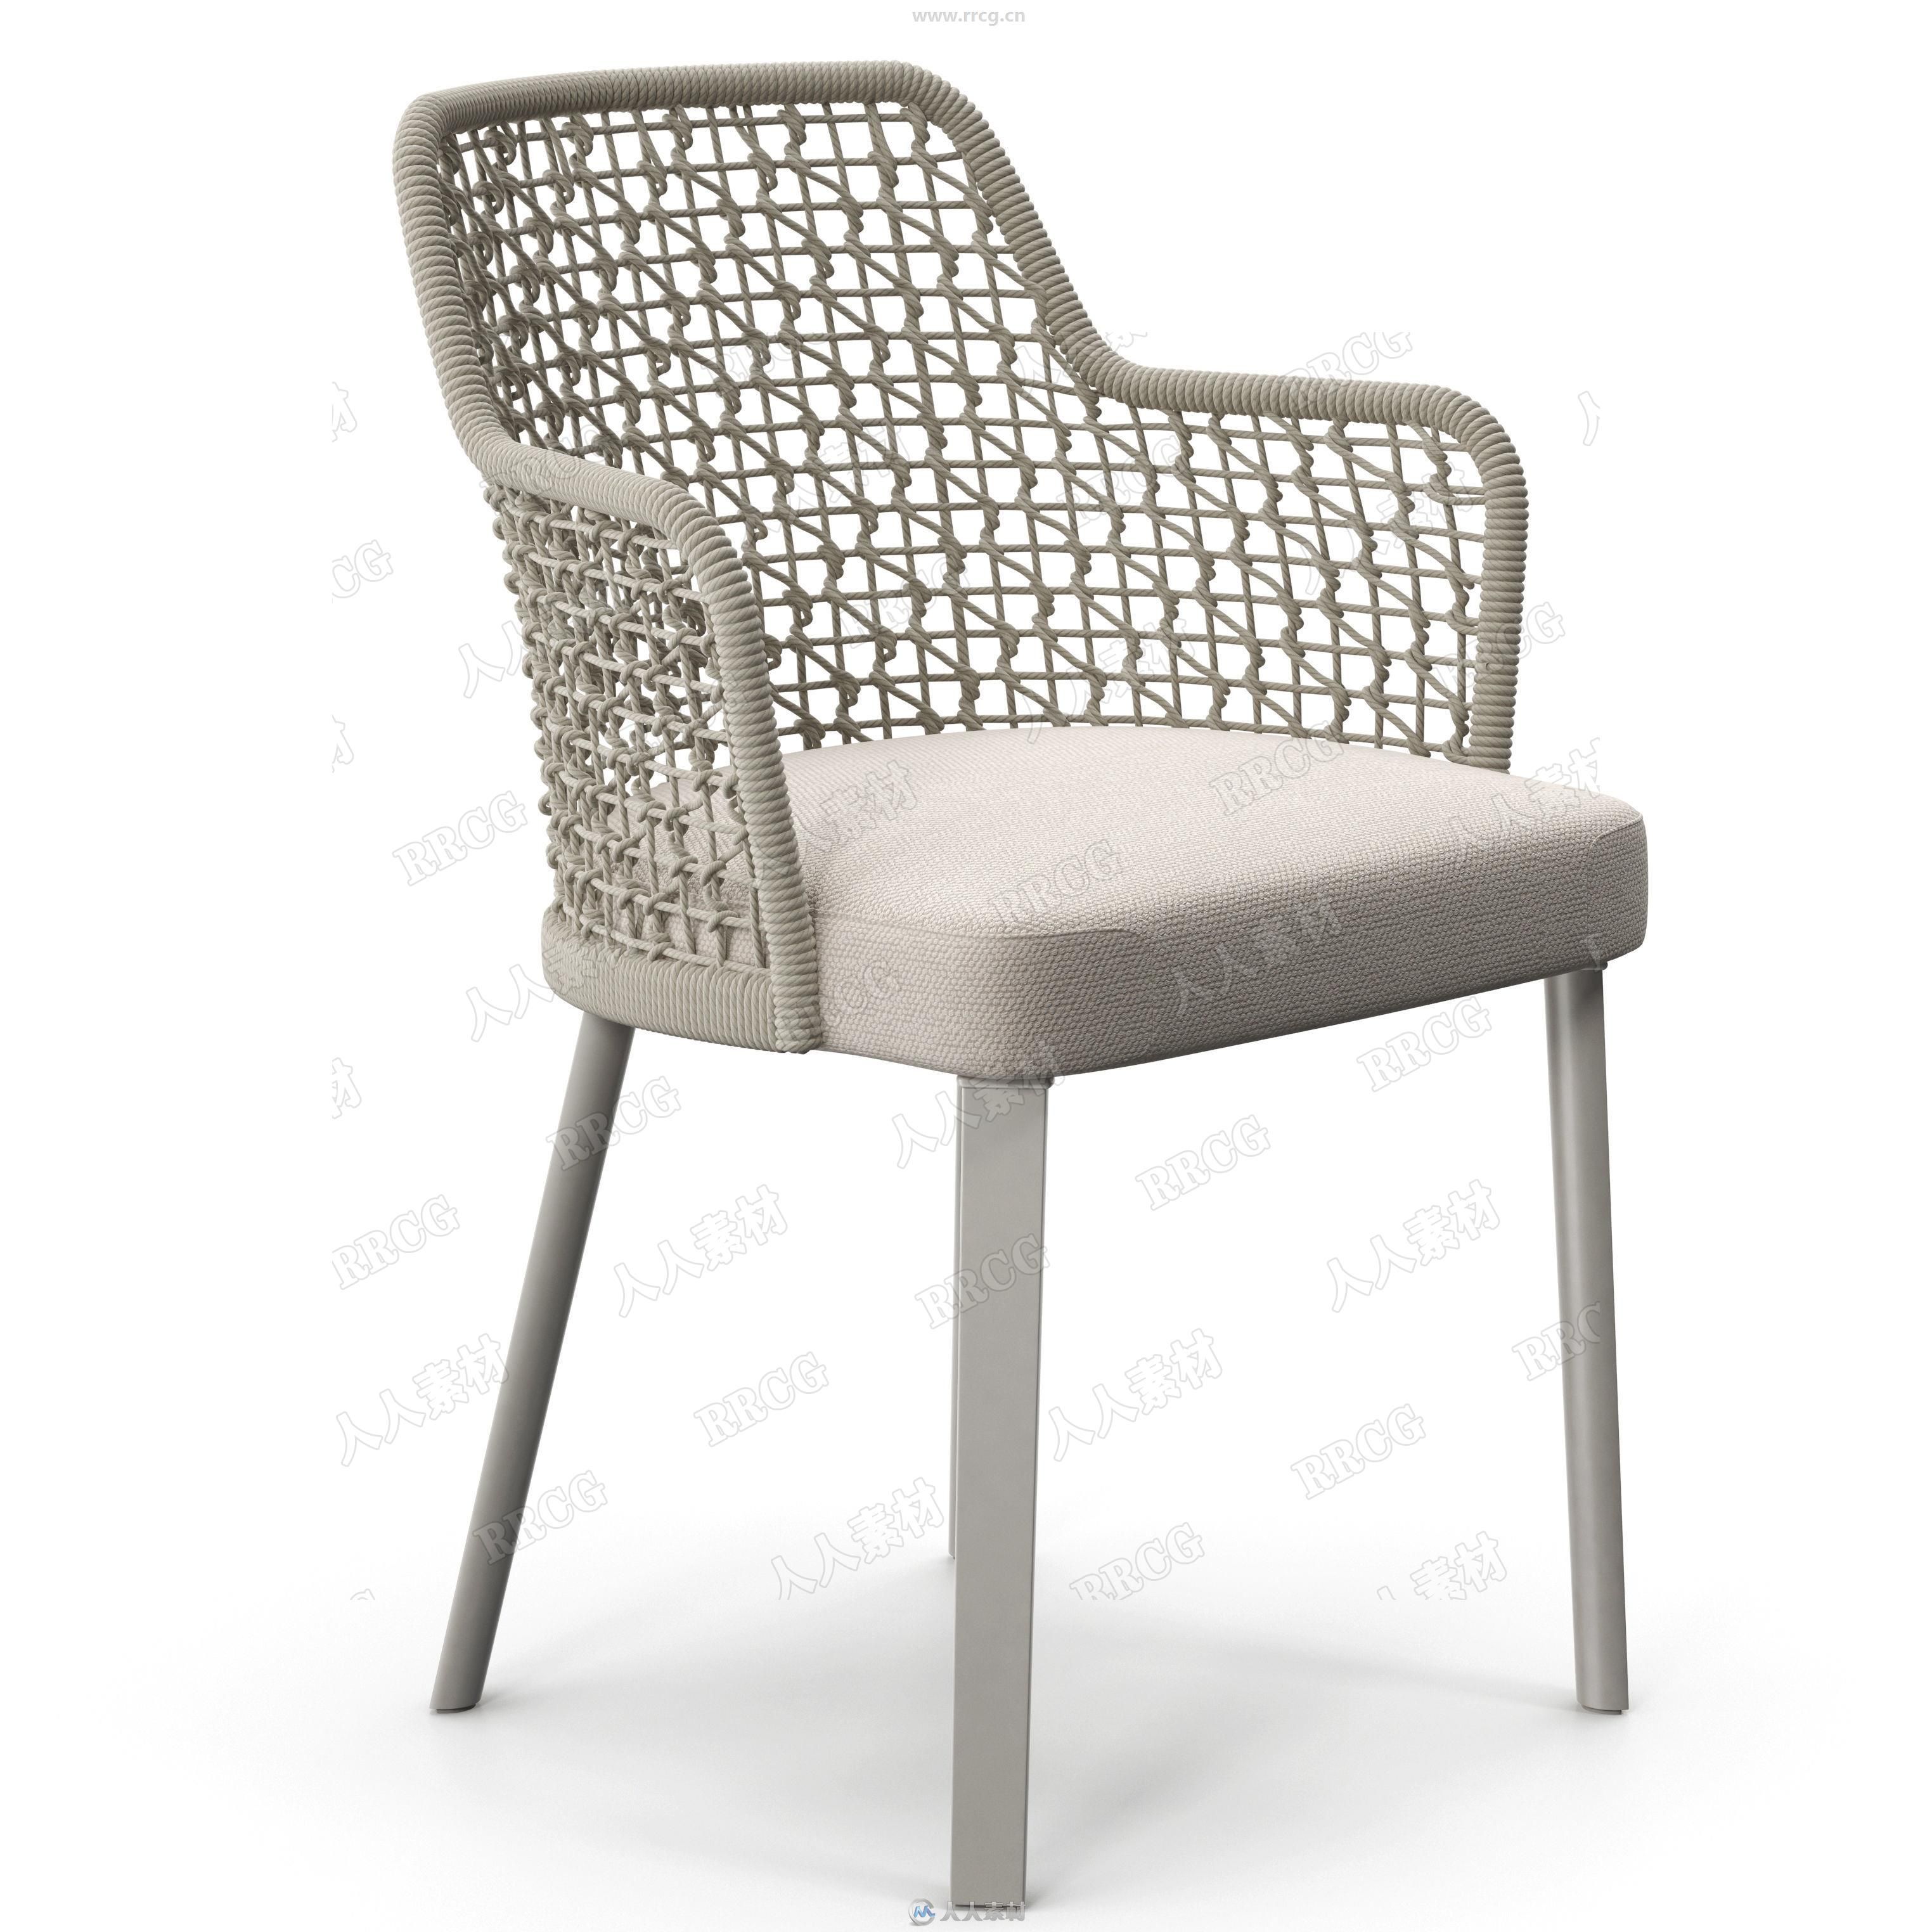 格式:max,obj,jpg,包含高品质透气织物材质椅子座椅套件3d模型与贴图